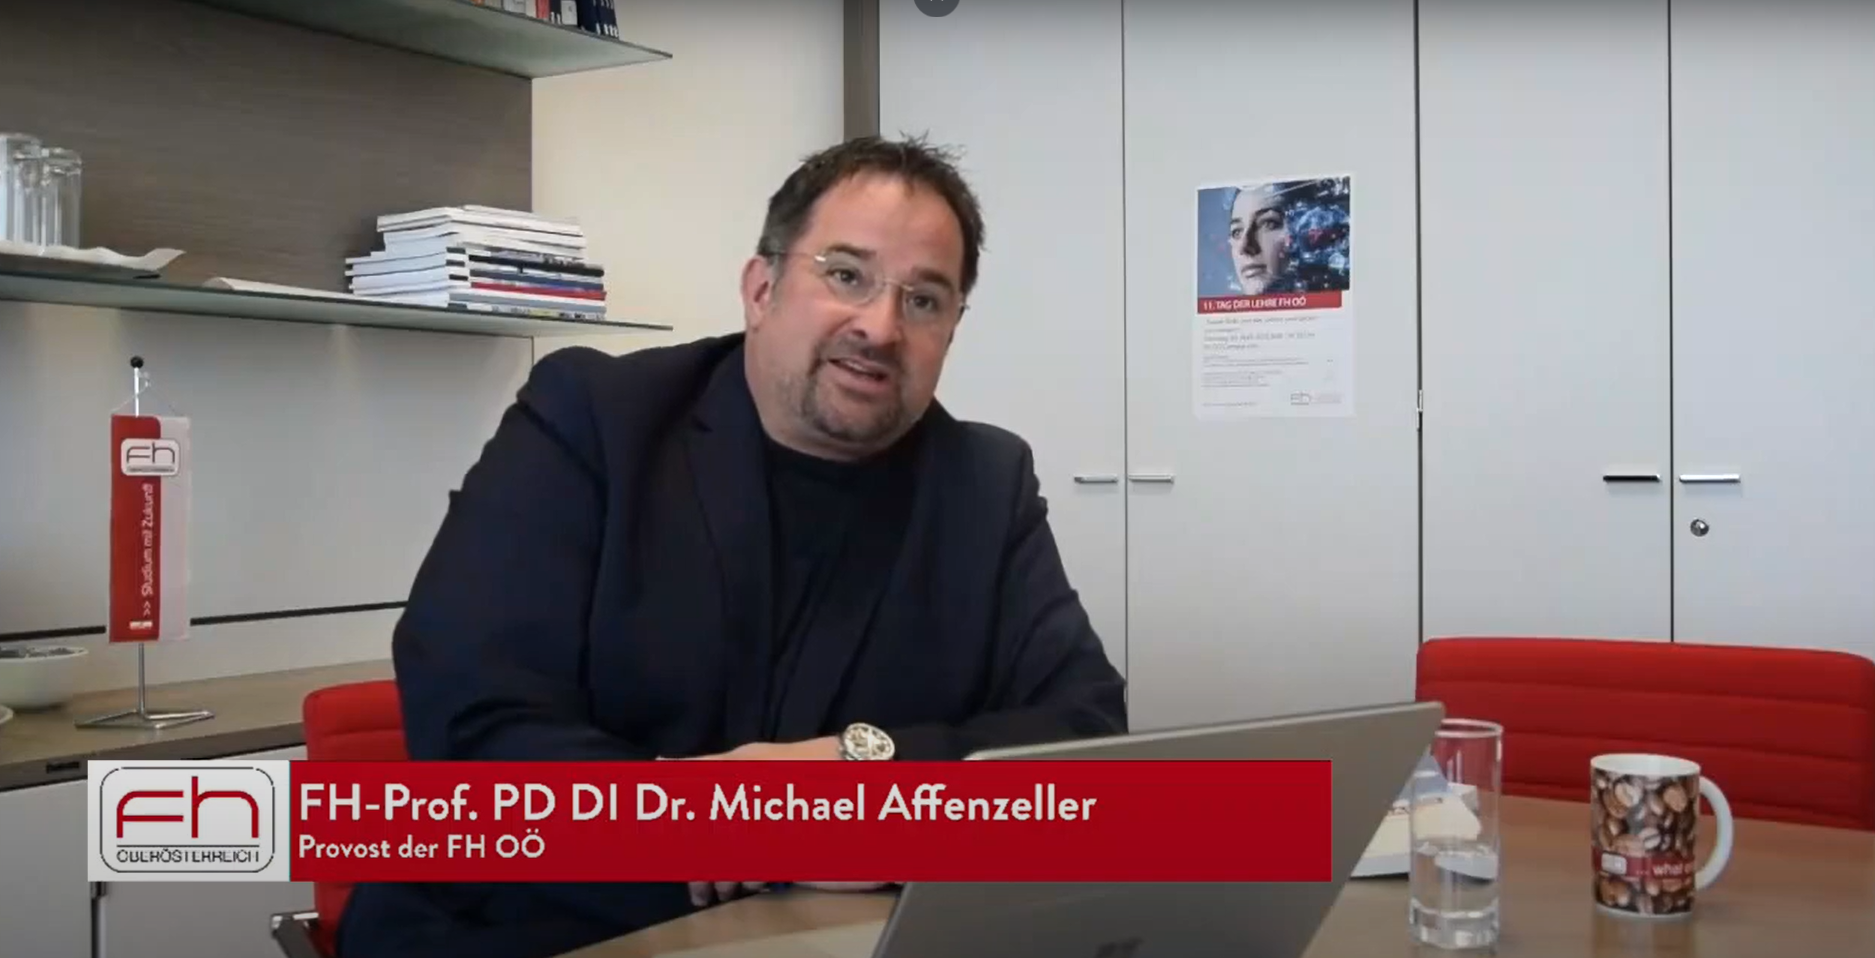 Auf diesem Bild ist FH-Prof. PD DI Dr. Michael Affenzeller, Provost der FH OÖ, zu sehen.